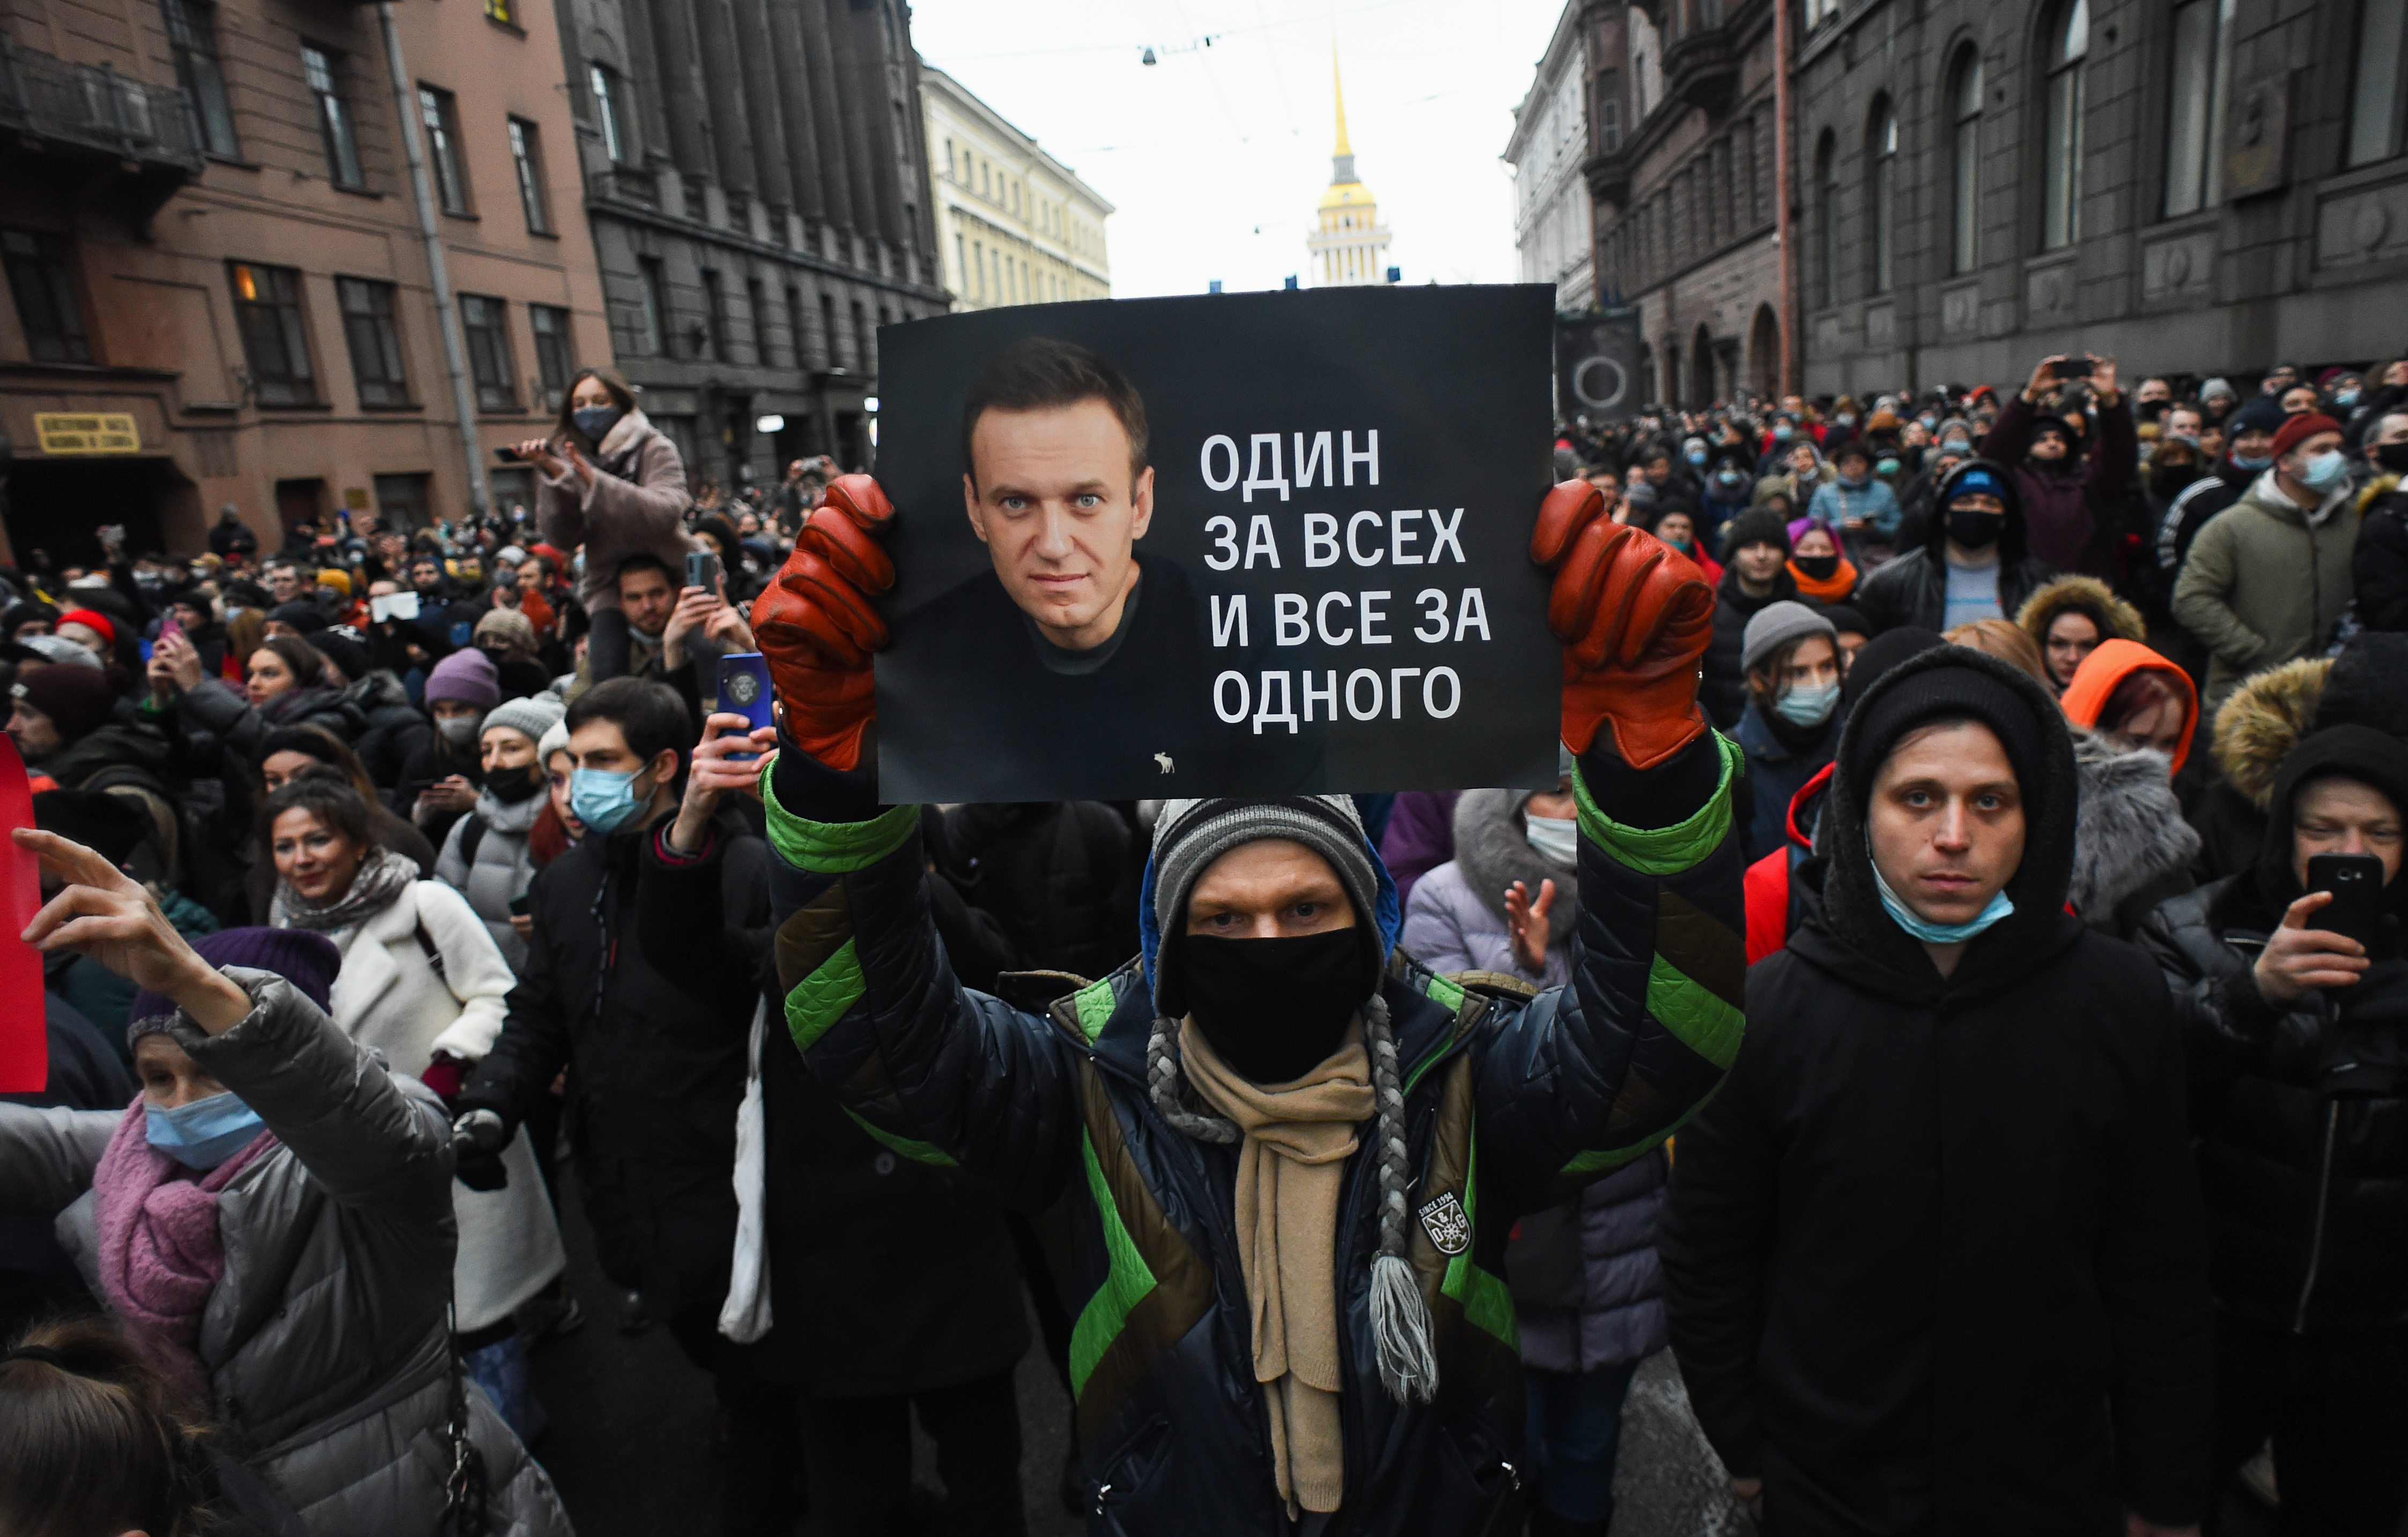 Több mint ezer tüntetőt tartóztattak le Oroszországban, köztük Navalnij feleségét